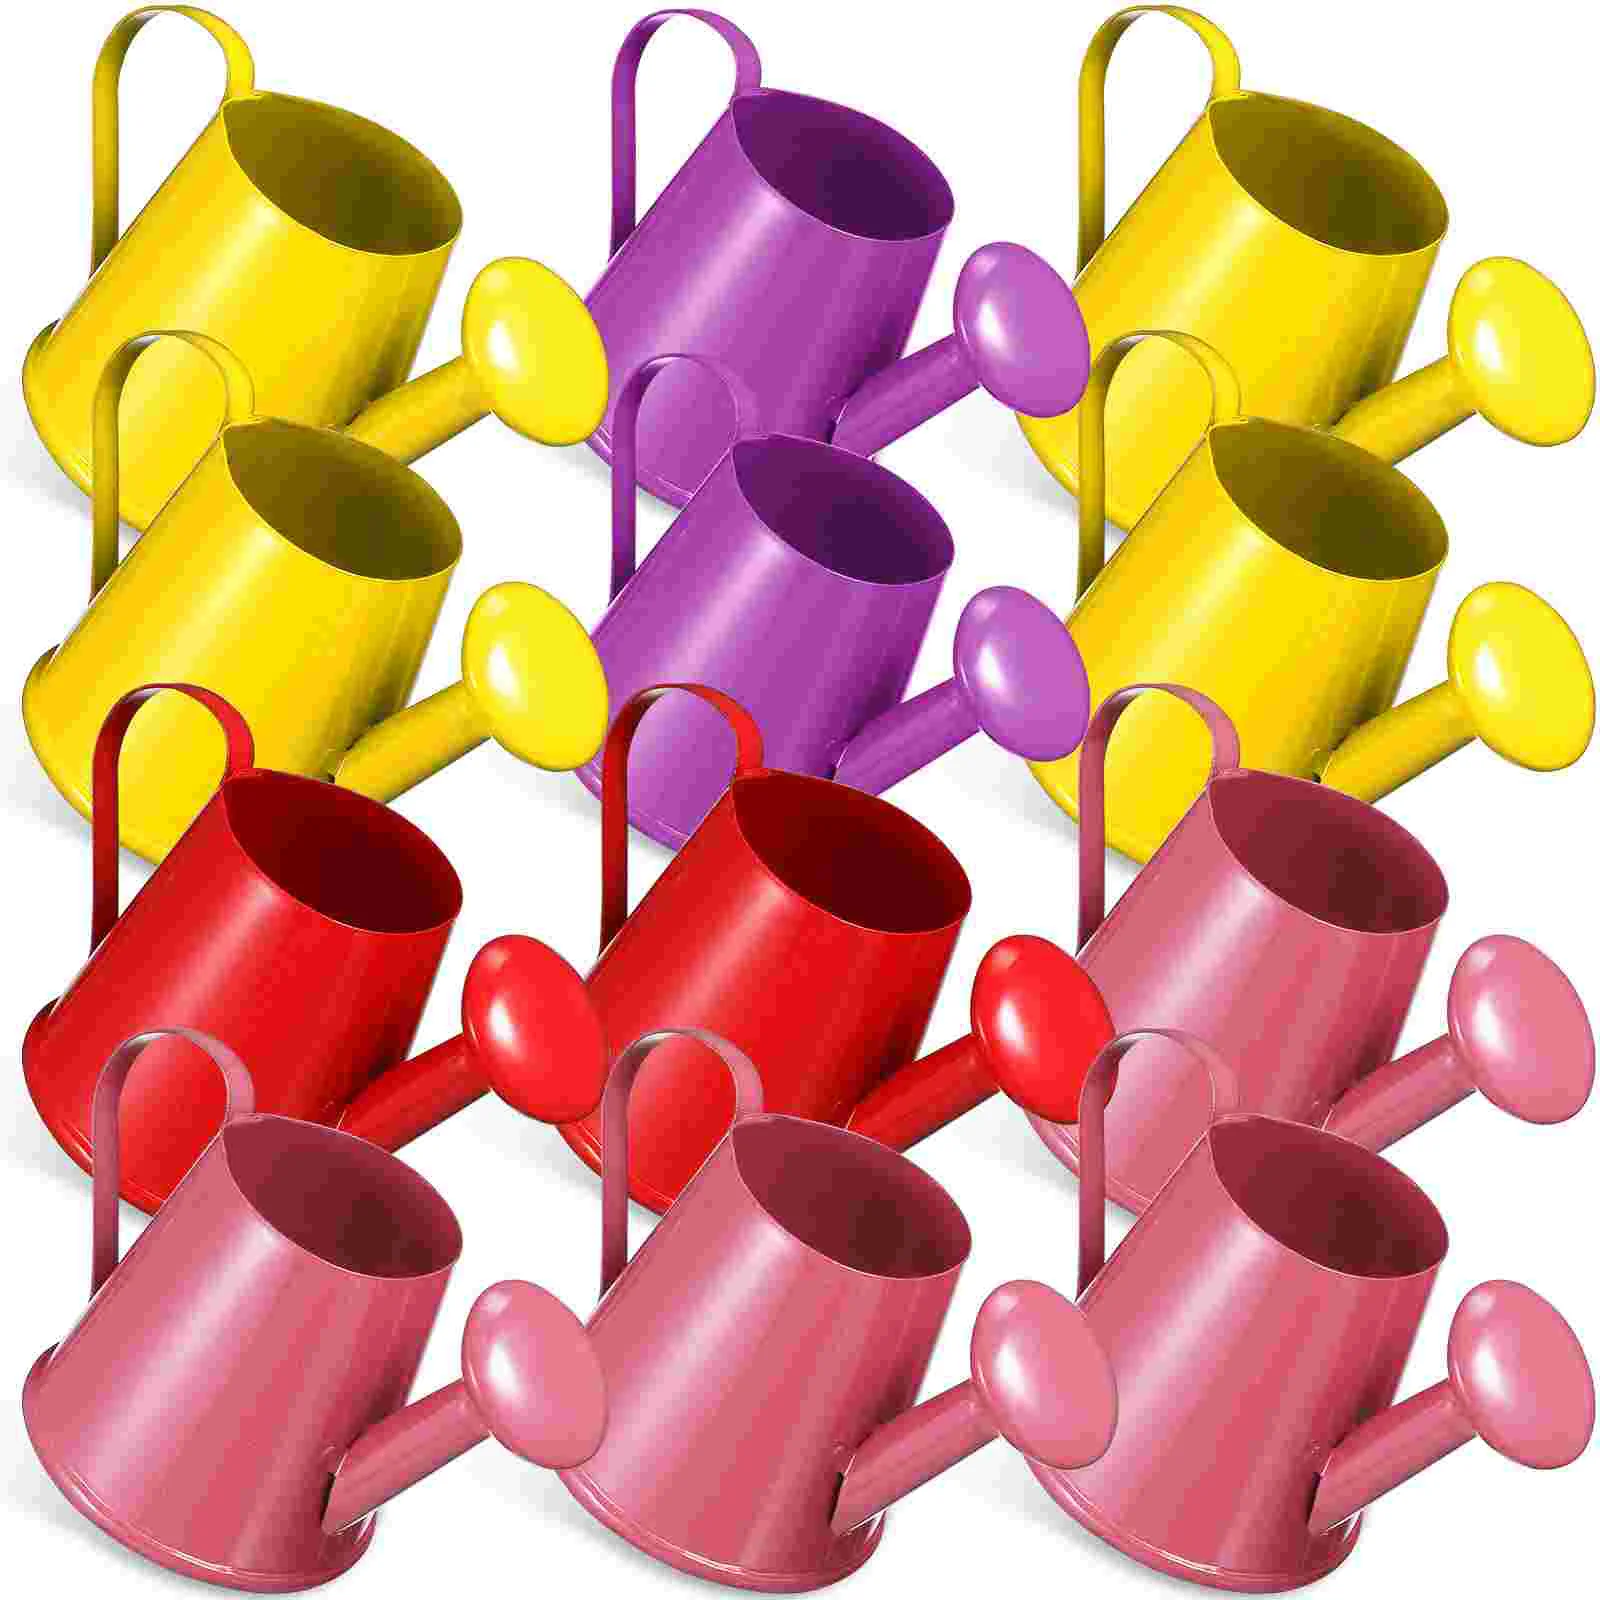 

Мини Супер маленькая сильнящая банка для полива металлические чайники банки игрушки Детские уличные игрушки